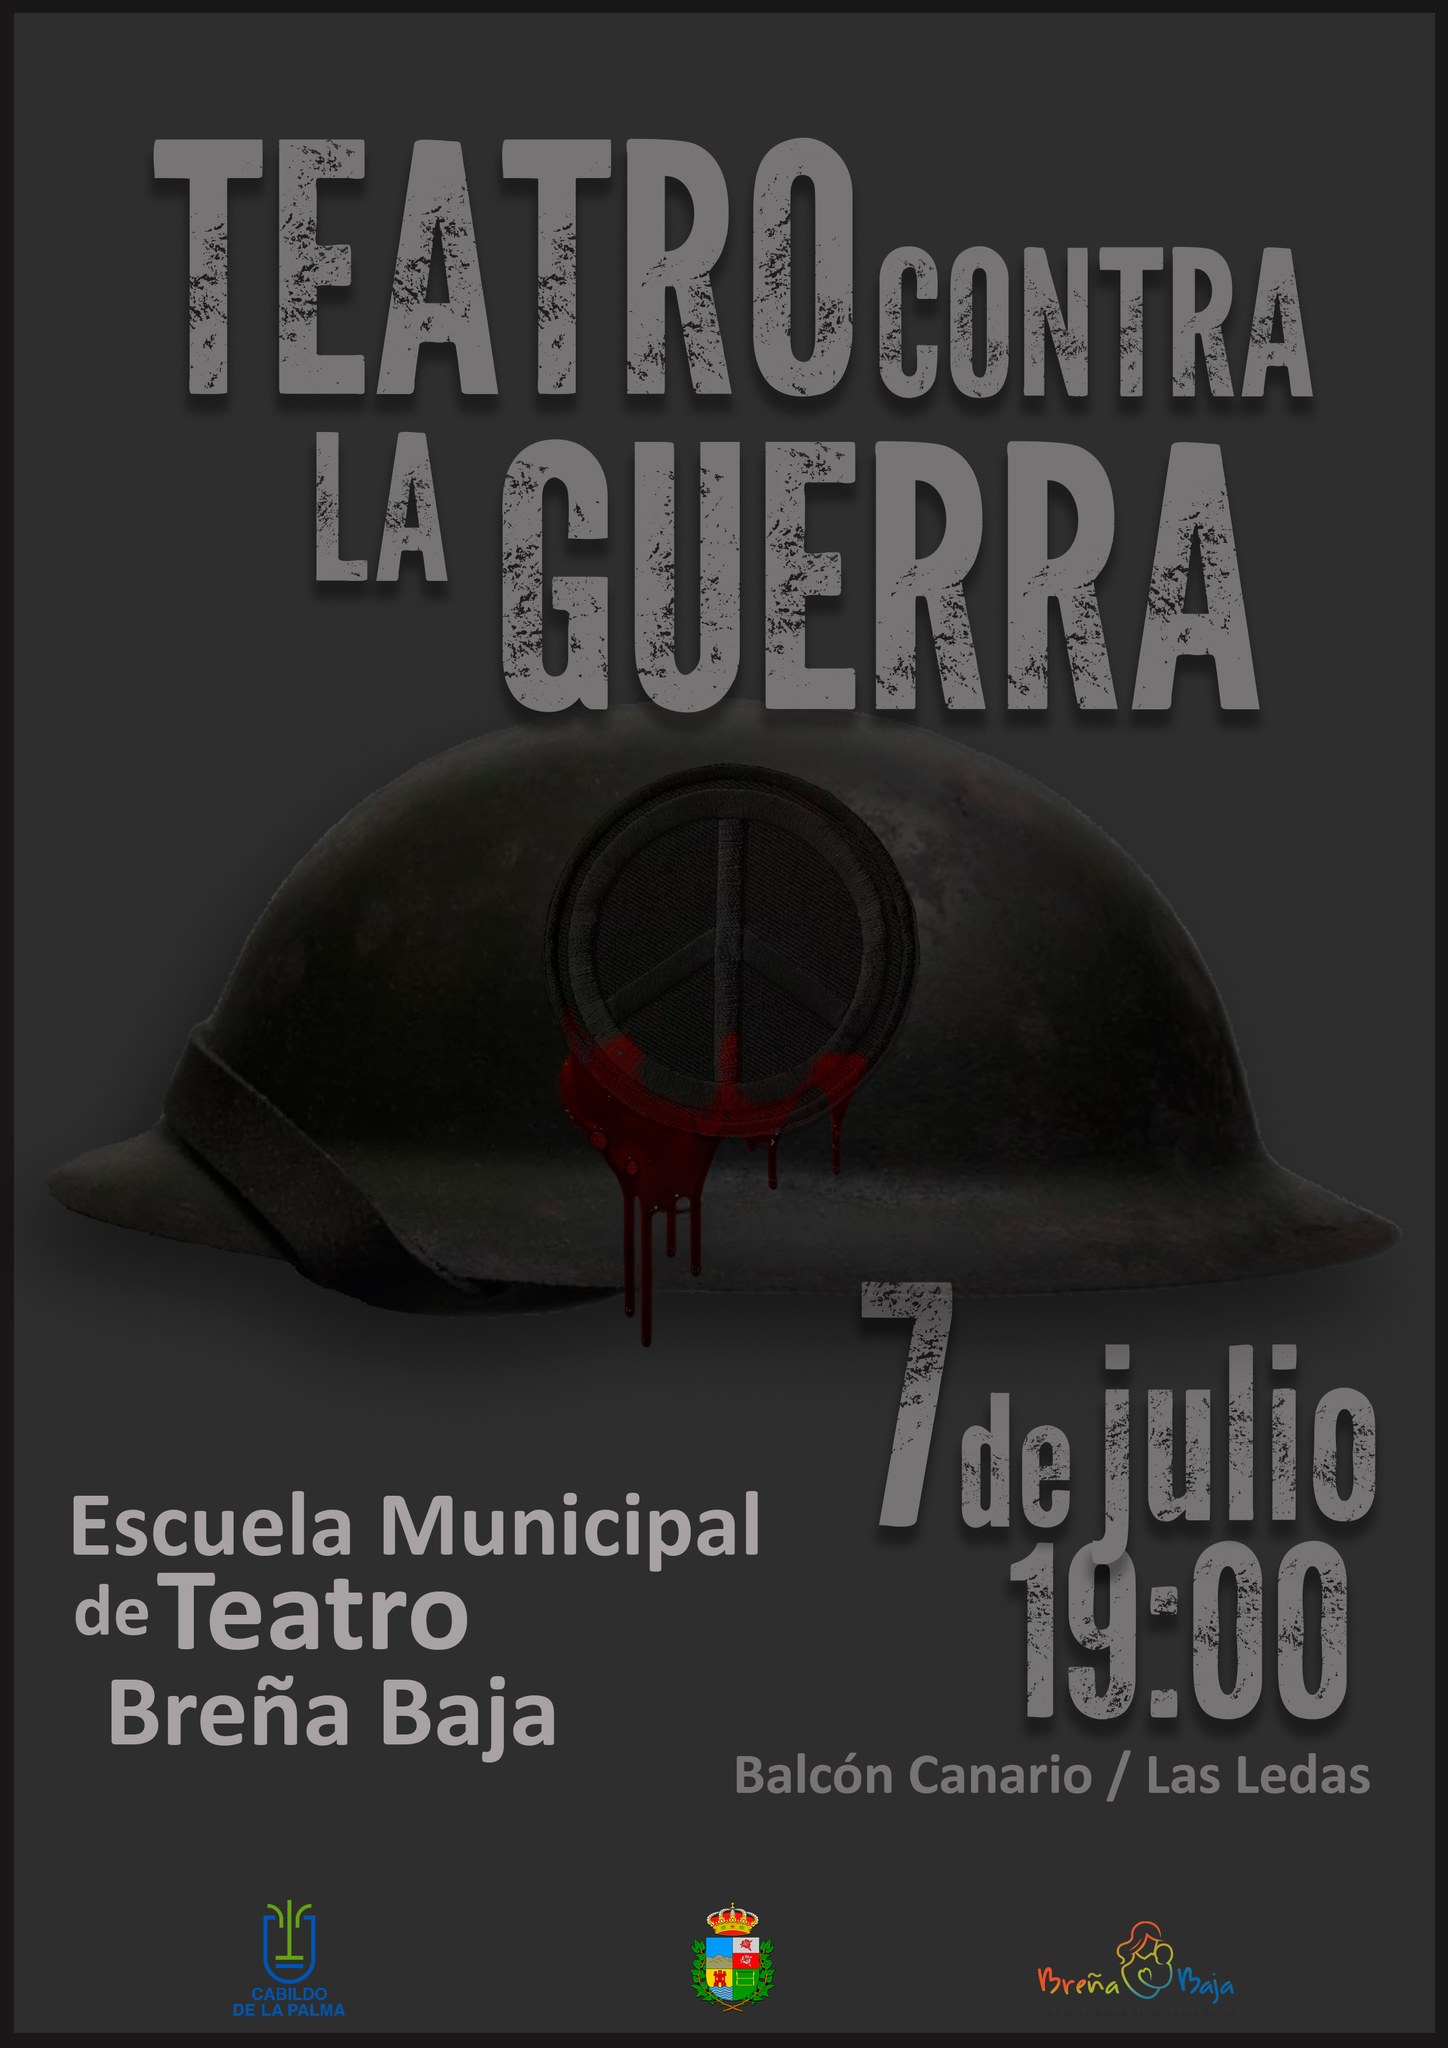 La Escuela Municipal de Teatro de Breña Baja presenta "Teatro contra la guerra"